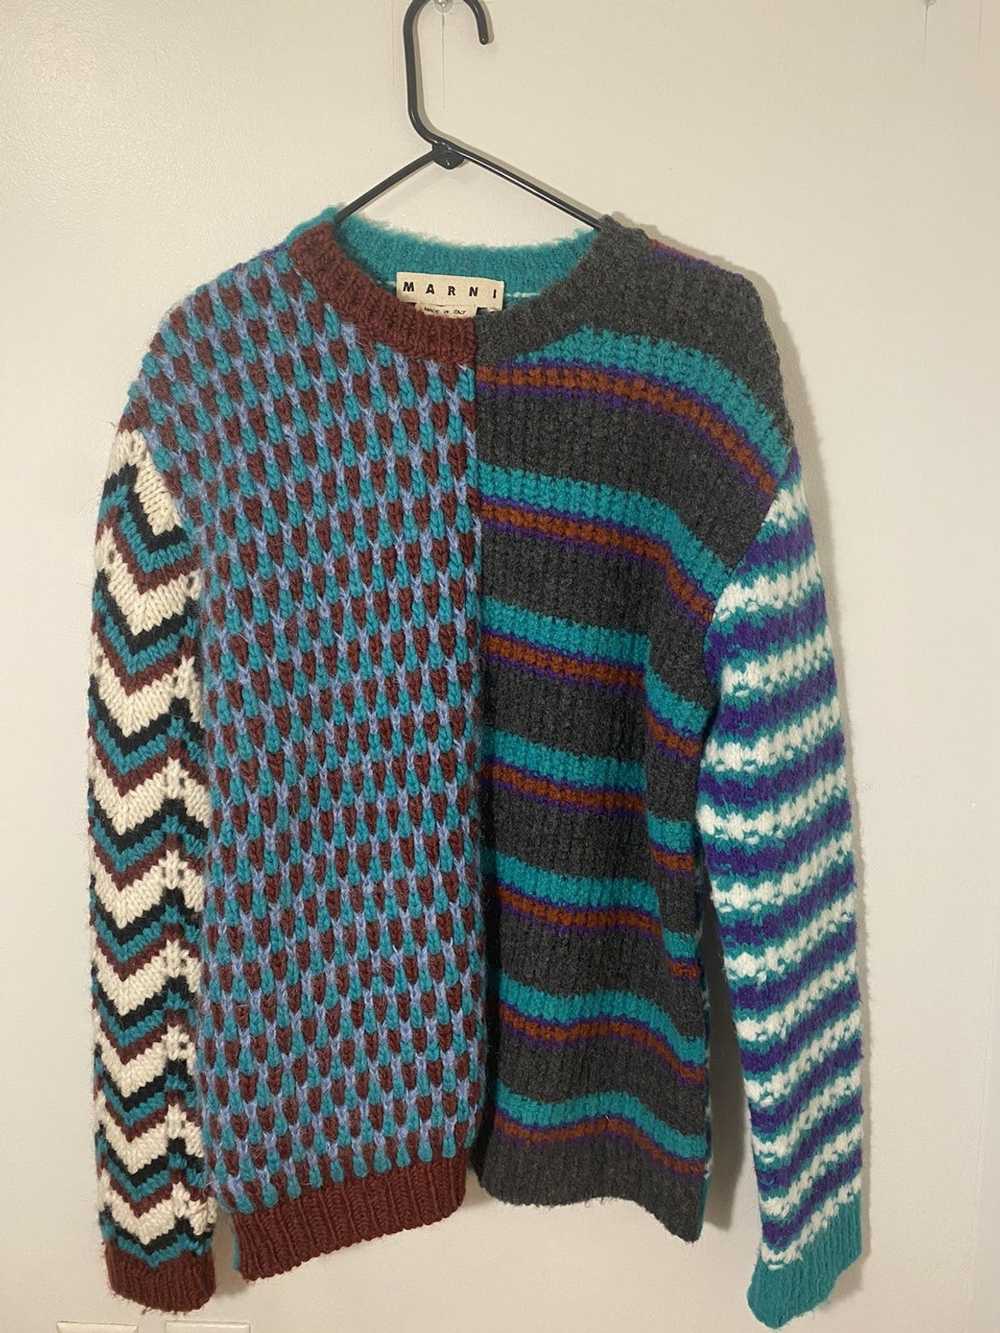 Marni Marni Multi Stripped Knit Sweater - image 2